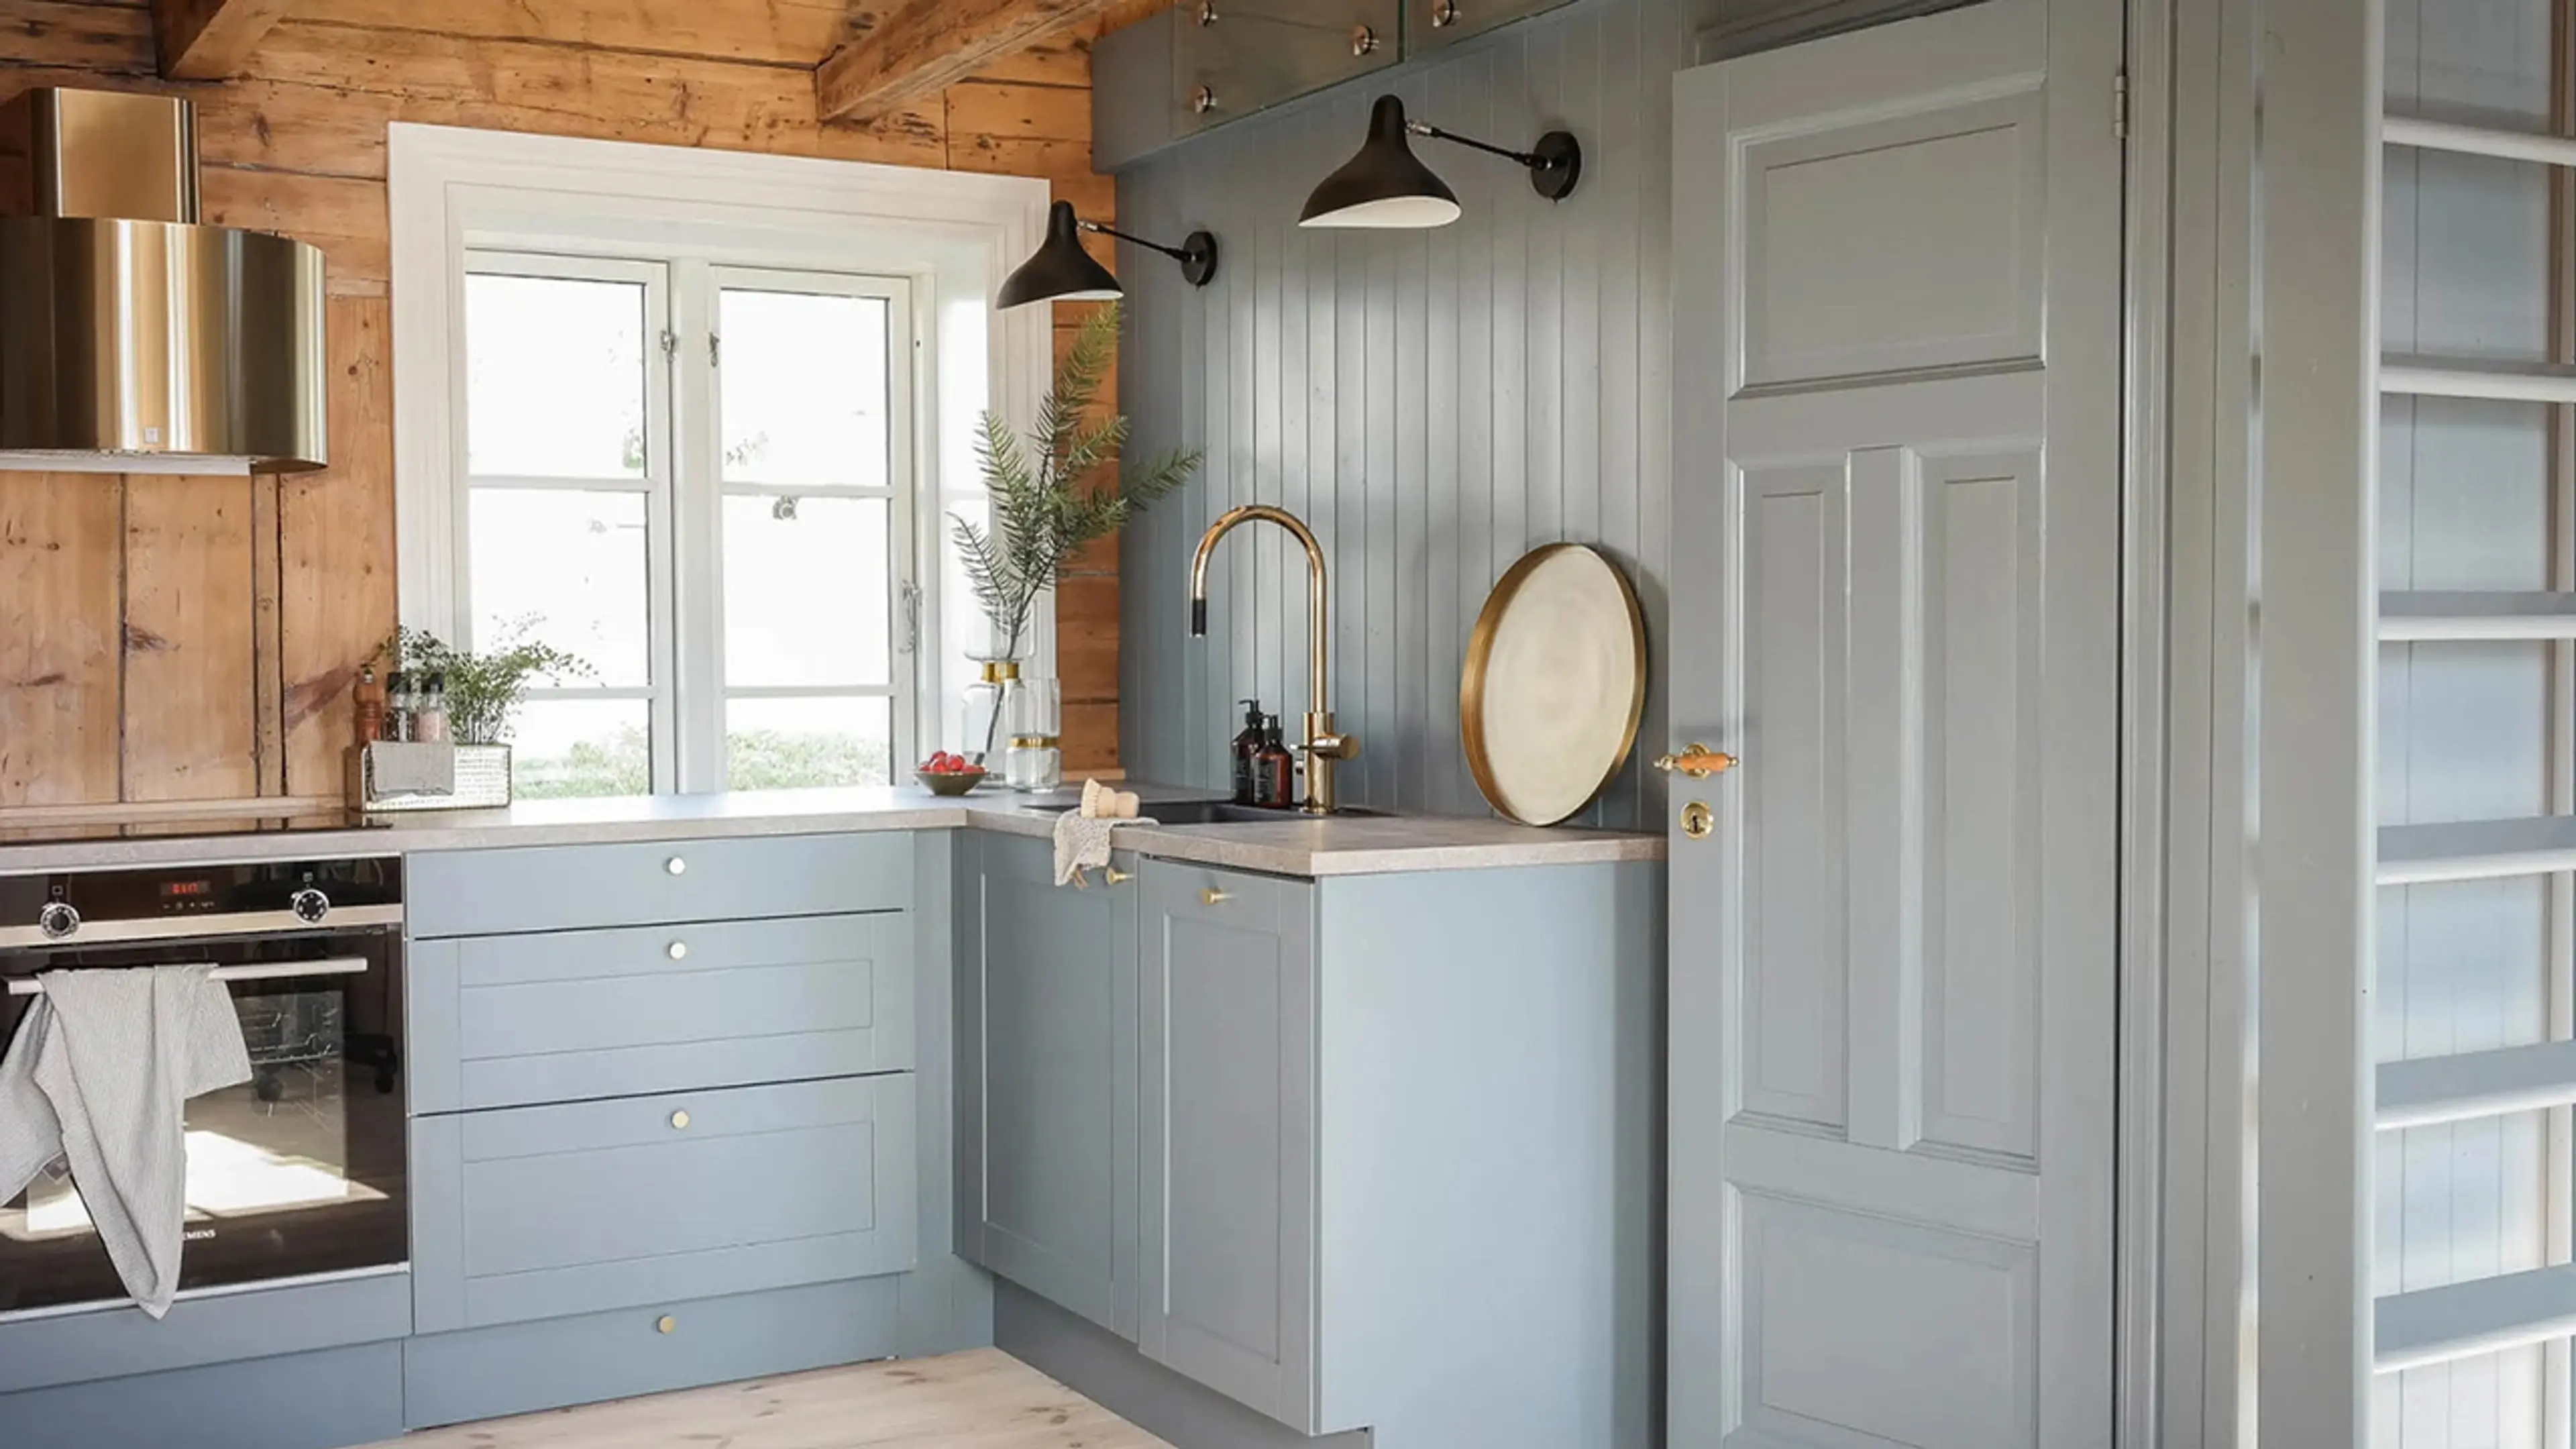 Hyttekjøkken med kjøkkenhette i messing, innebygd stekeovn og fronter malt i fargen 5044 Isblå fra Jotun.